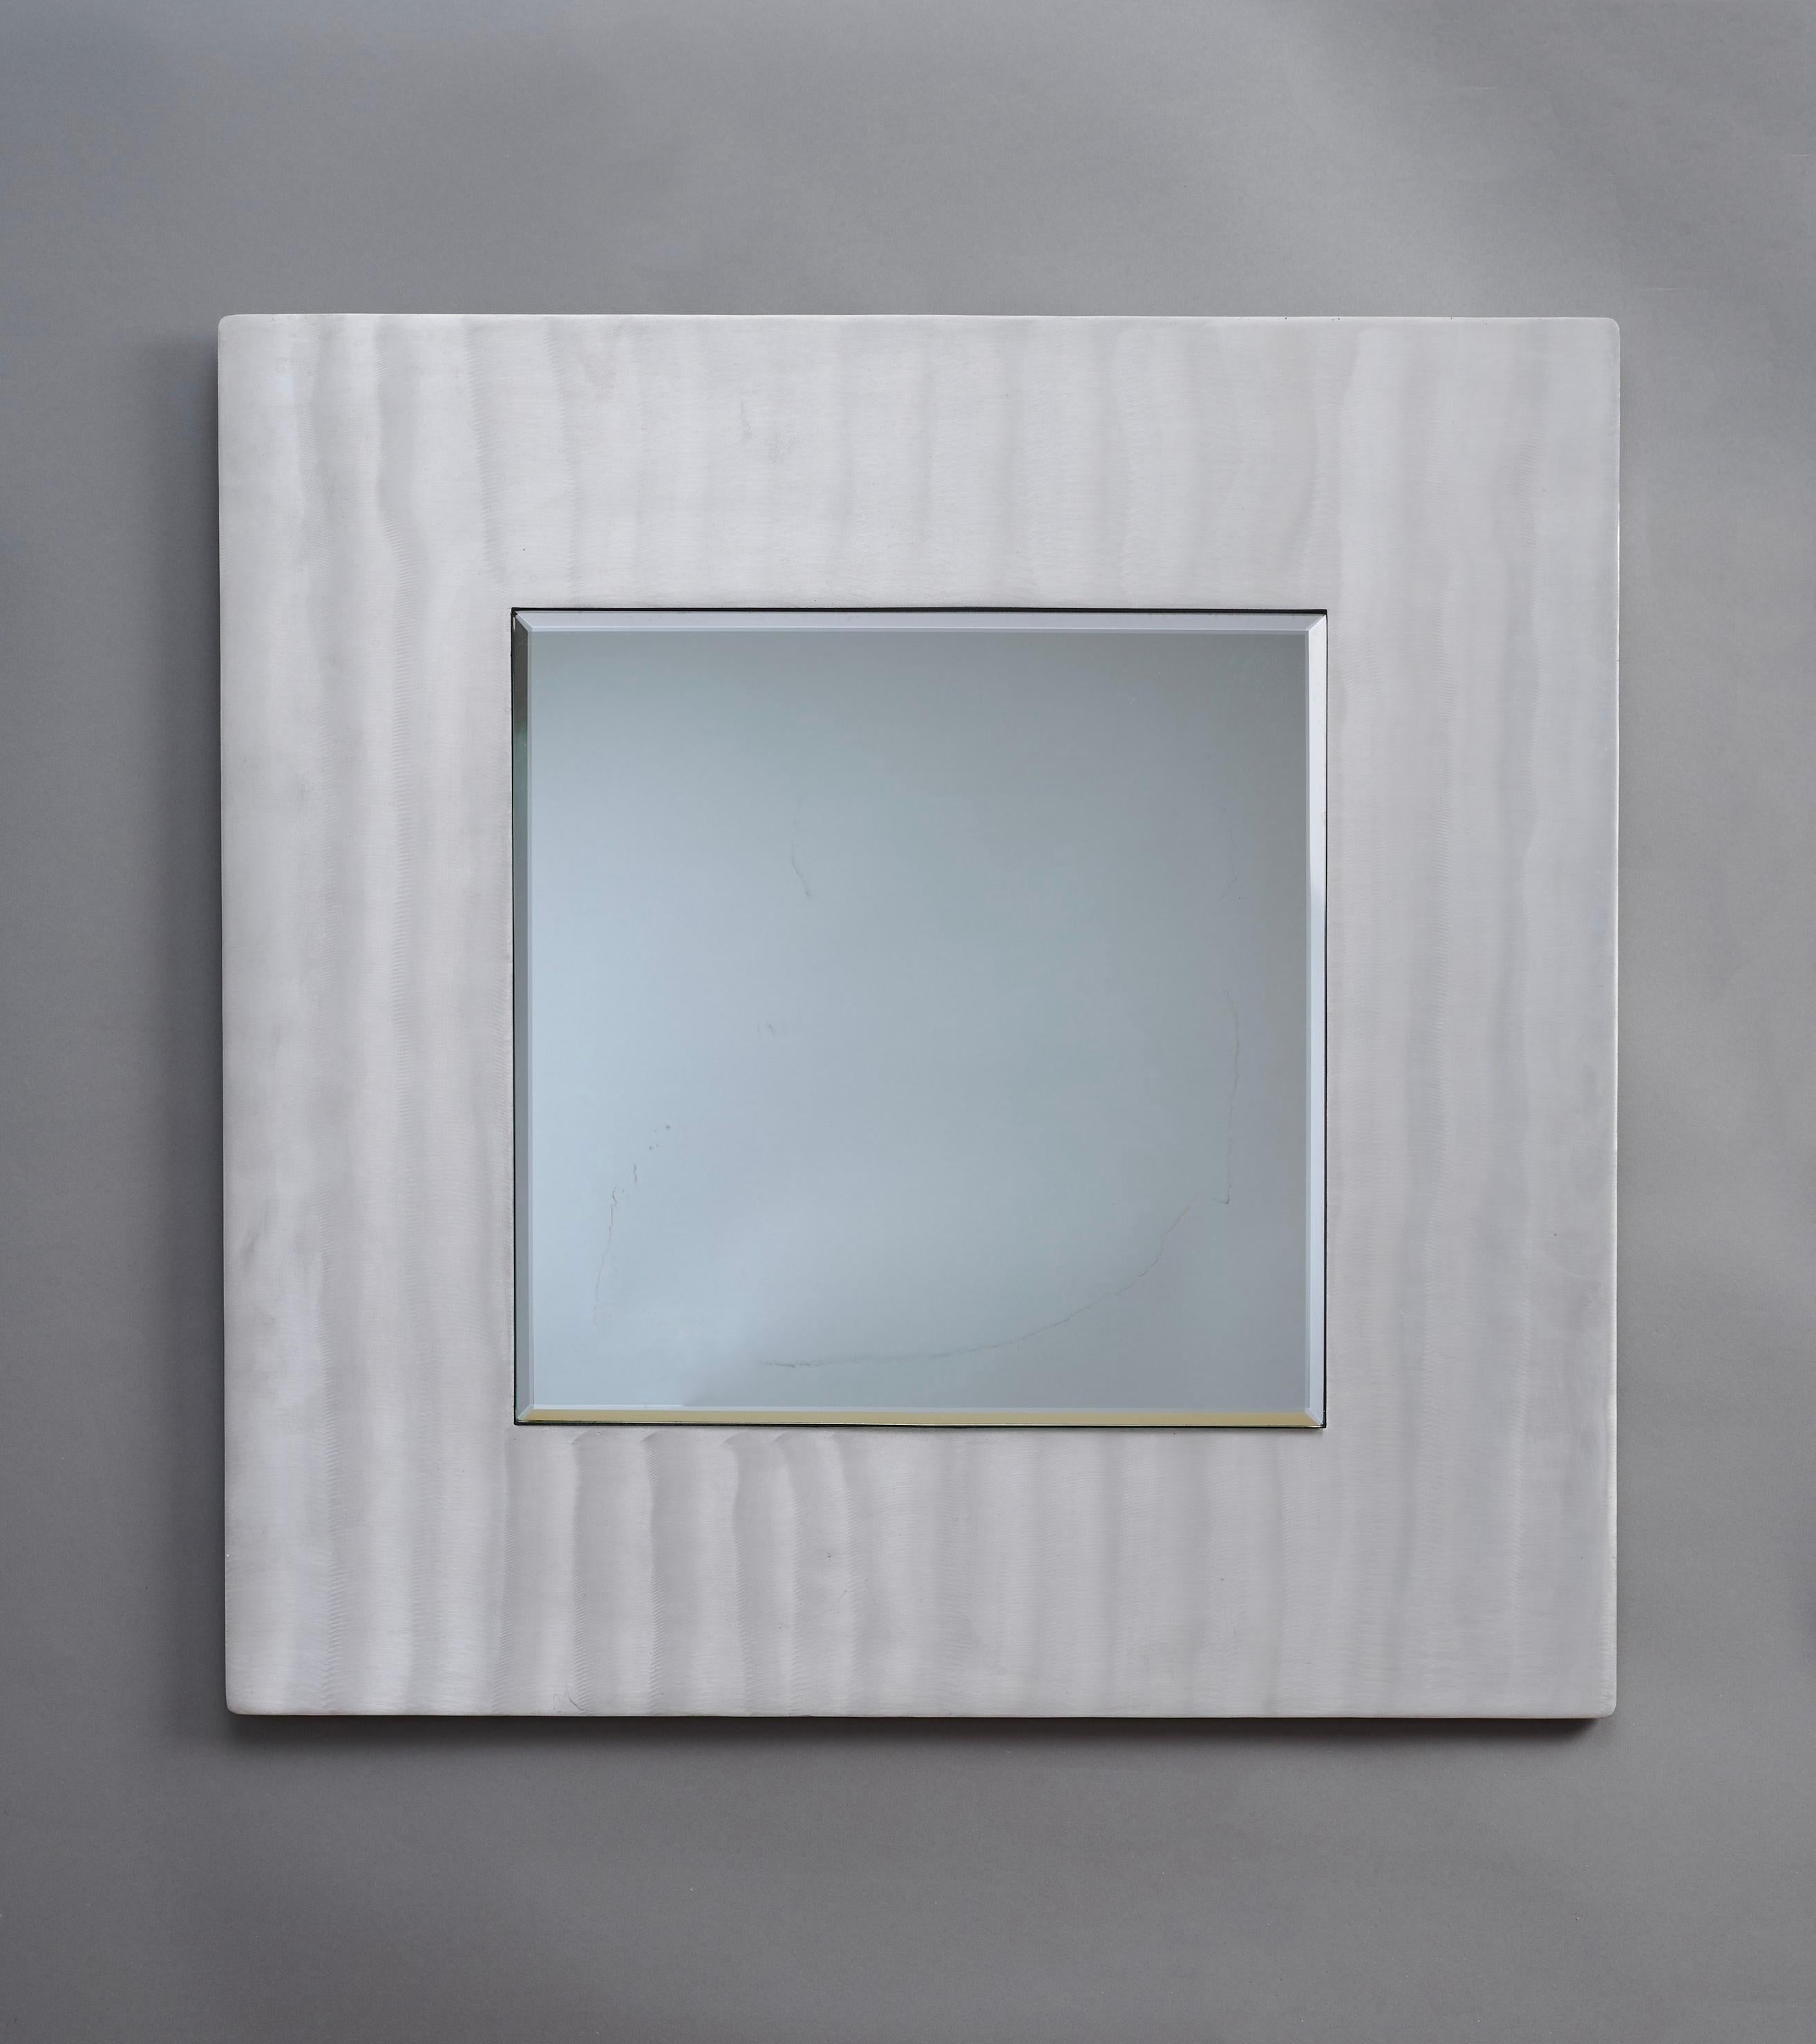 Lorenzo Burchiellaro (né en 1933)

Un miroir mural carré dynamique du sculpteur italien Lorenzo Burchiellaro, en aluminium travaillé à la main. La surface texturée du cadre est gravée et brossée en vagues verticales gestuelles, faisant onduler et